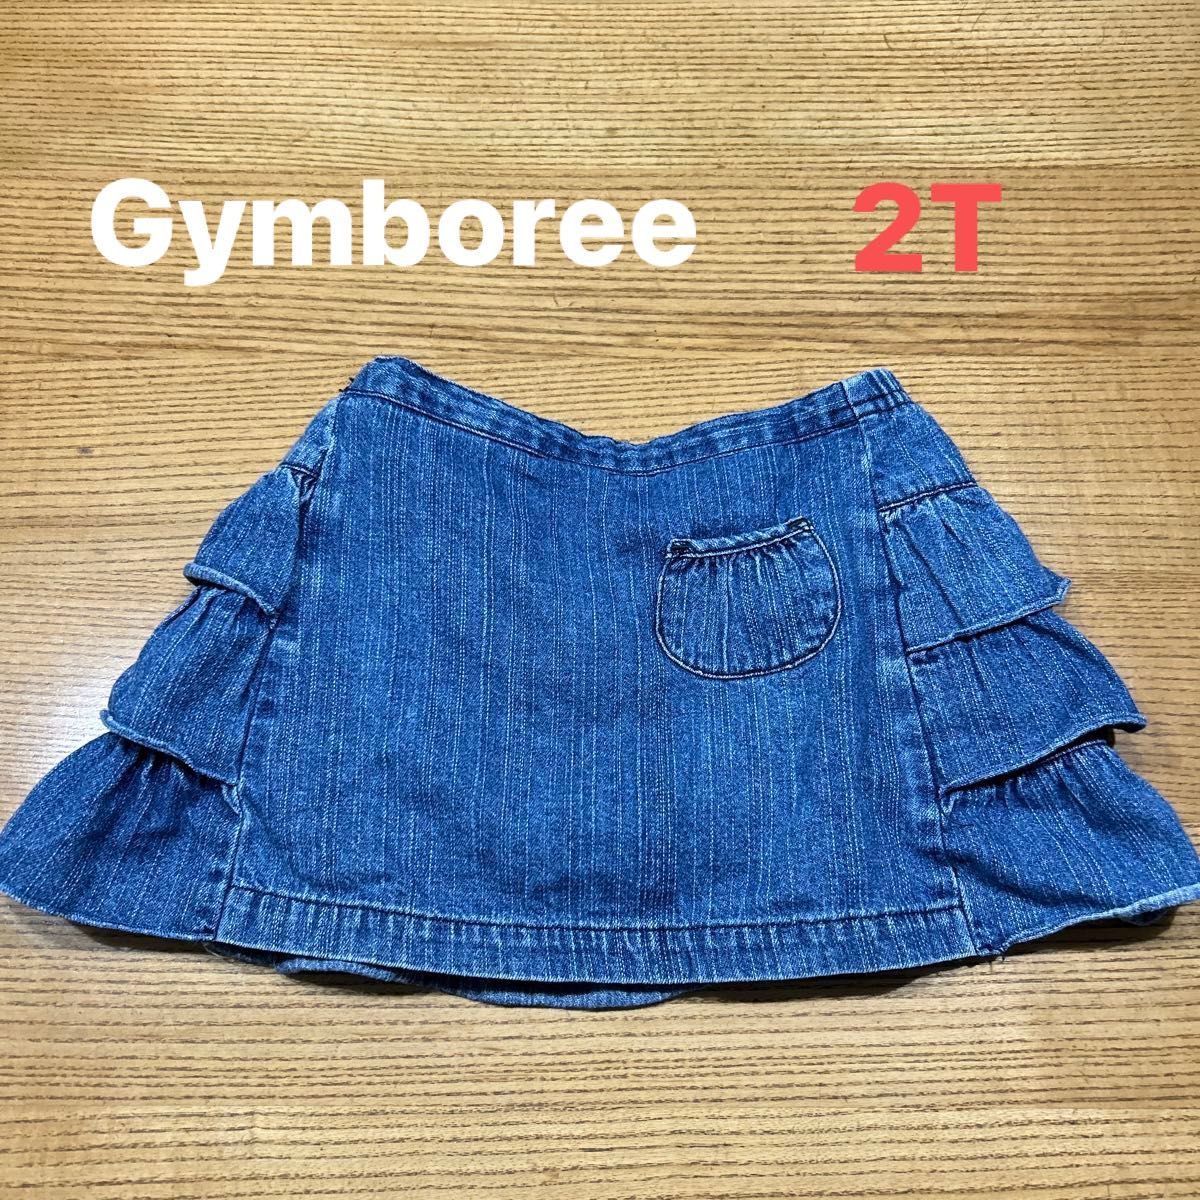 【Gymboree】ティアード デニムスカート 3段フリル スカート インナーパンツ付き 2T (95cm)